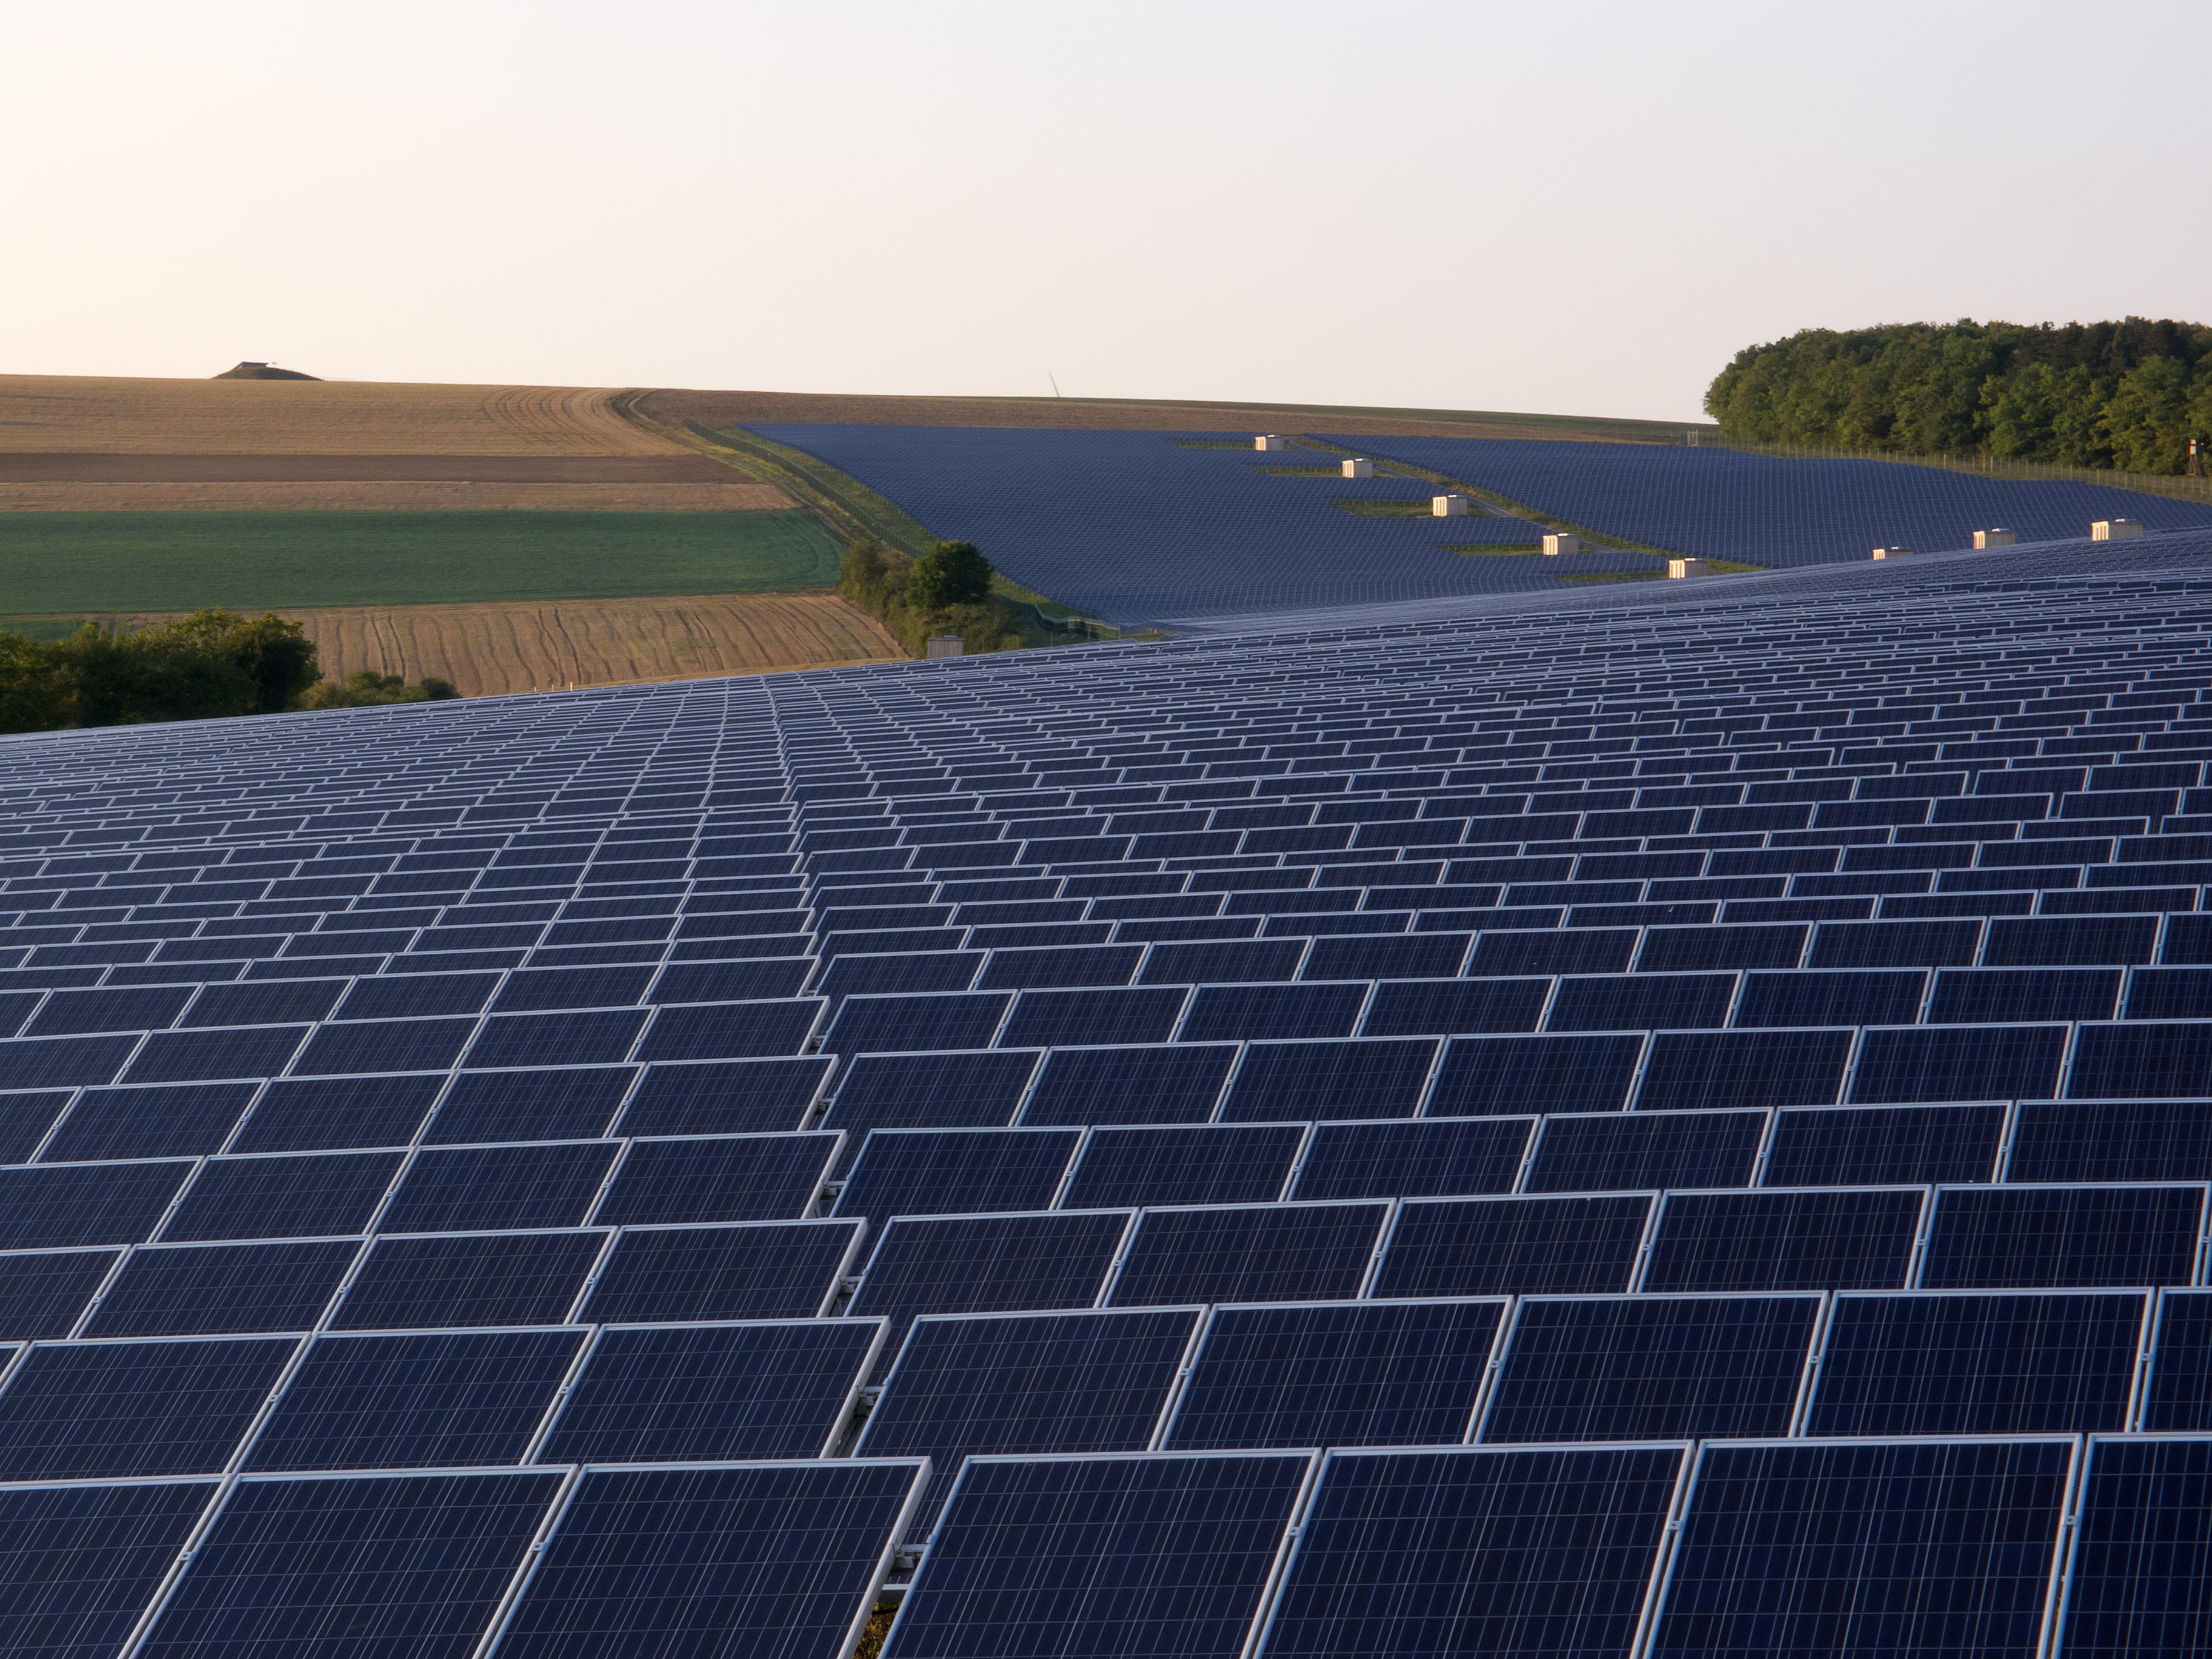 Parque fotovoltaico en Bavaria (Alemania). Imagen: OhWeh. Fuente: Wikipedia.